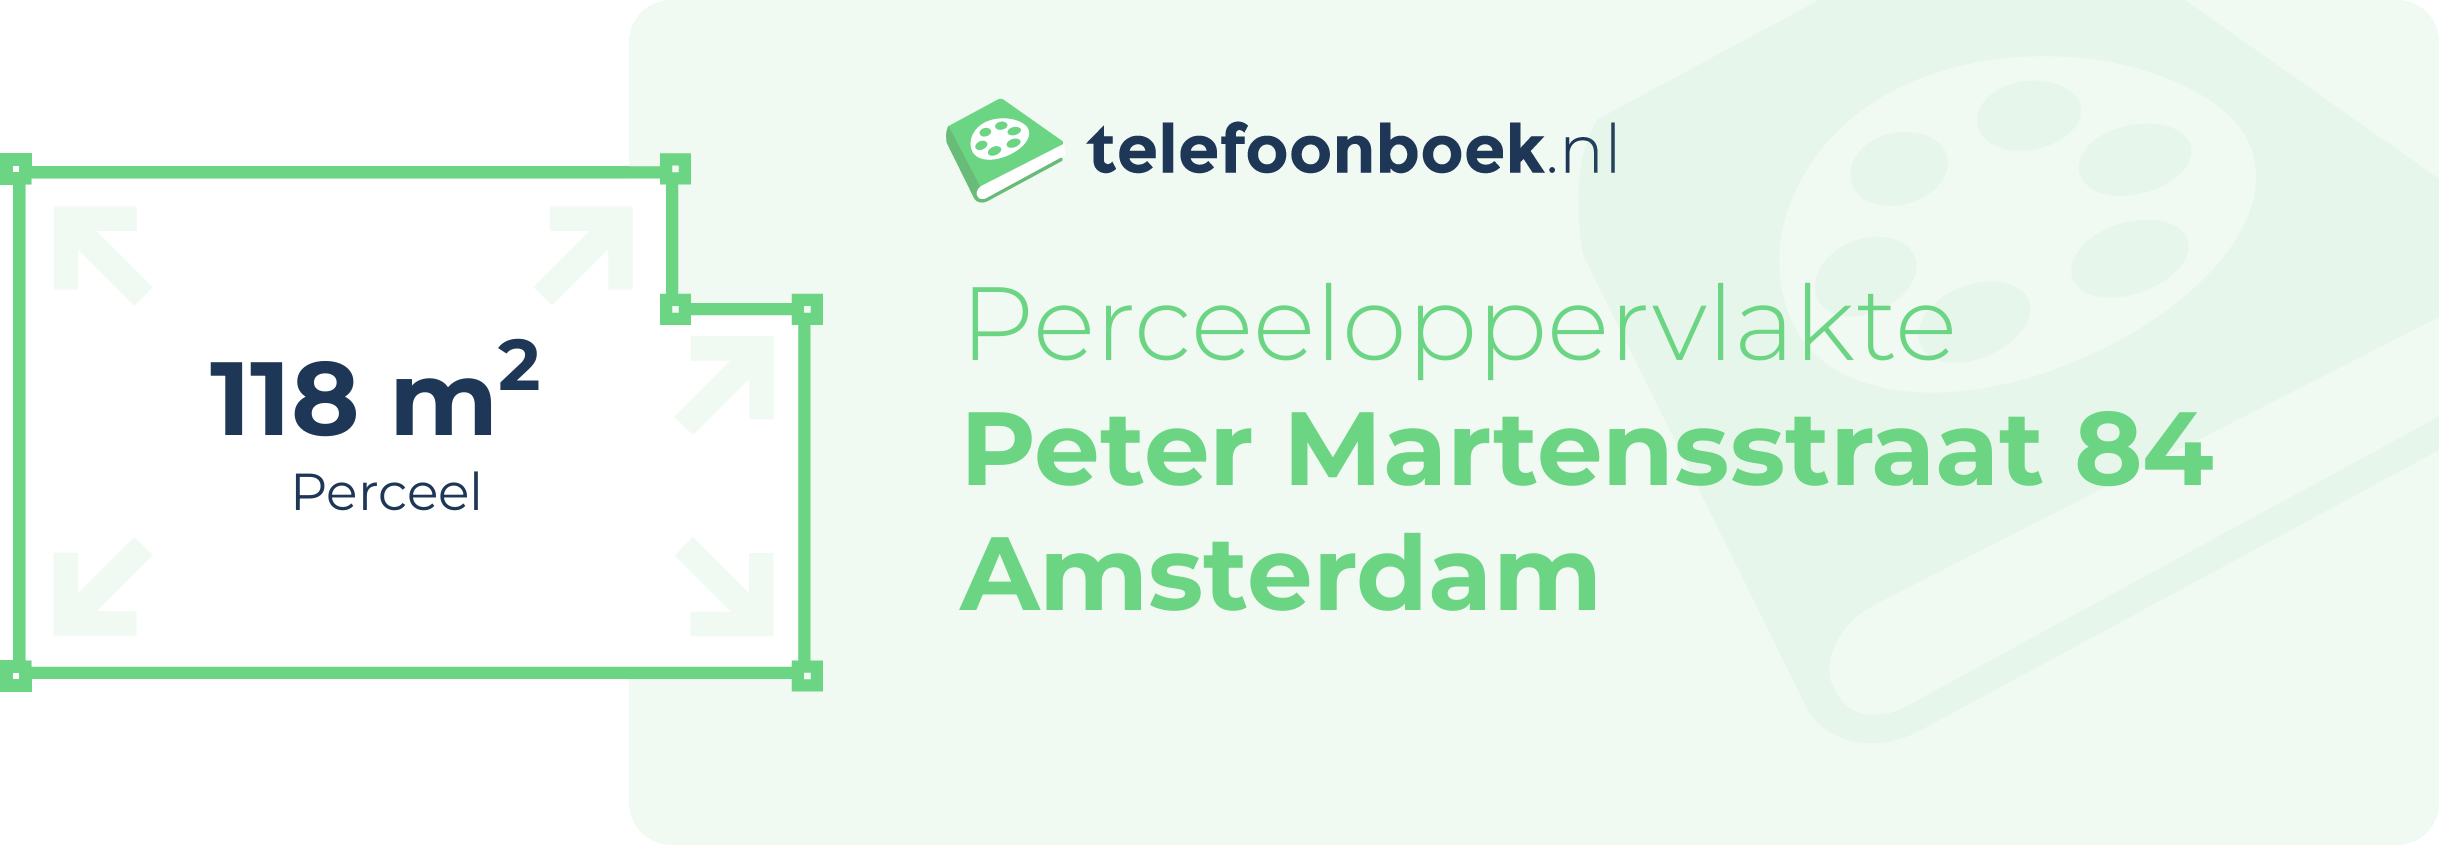 Perceeloppervlakte Peter Martensstraat 84 Amsterdam